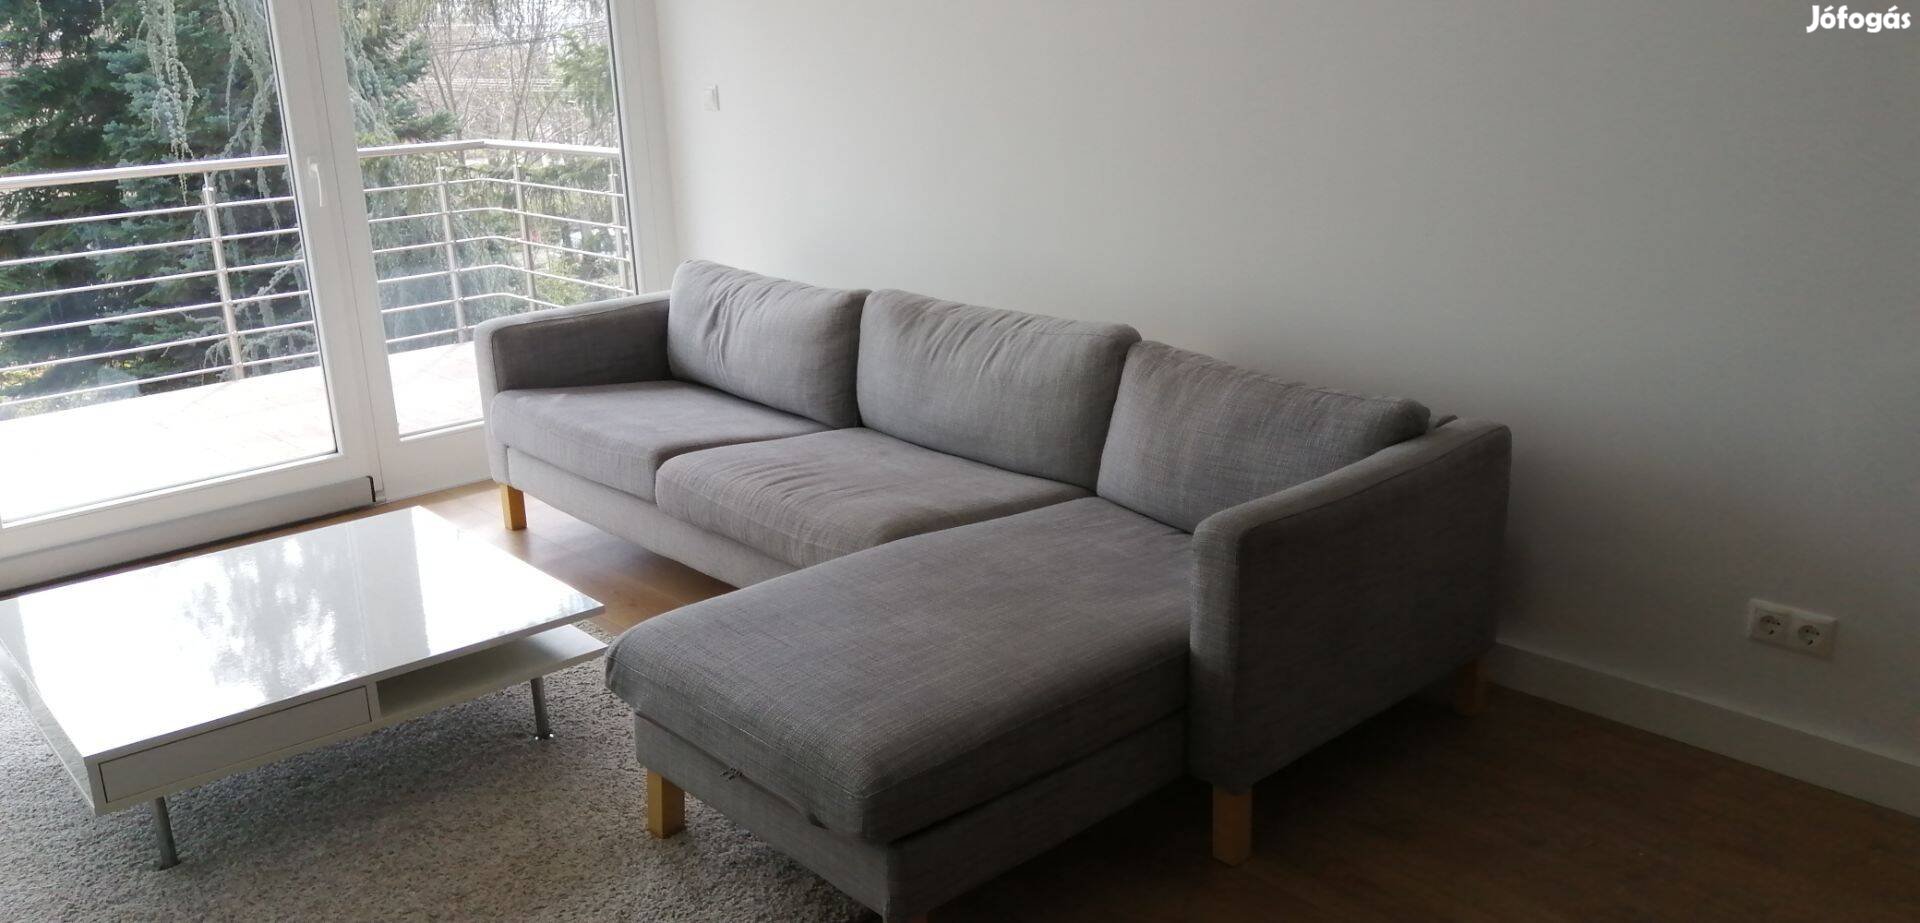 260x160 cm-es kanapé